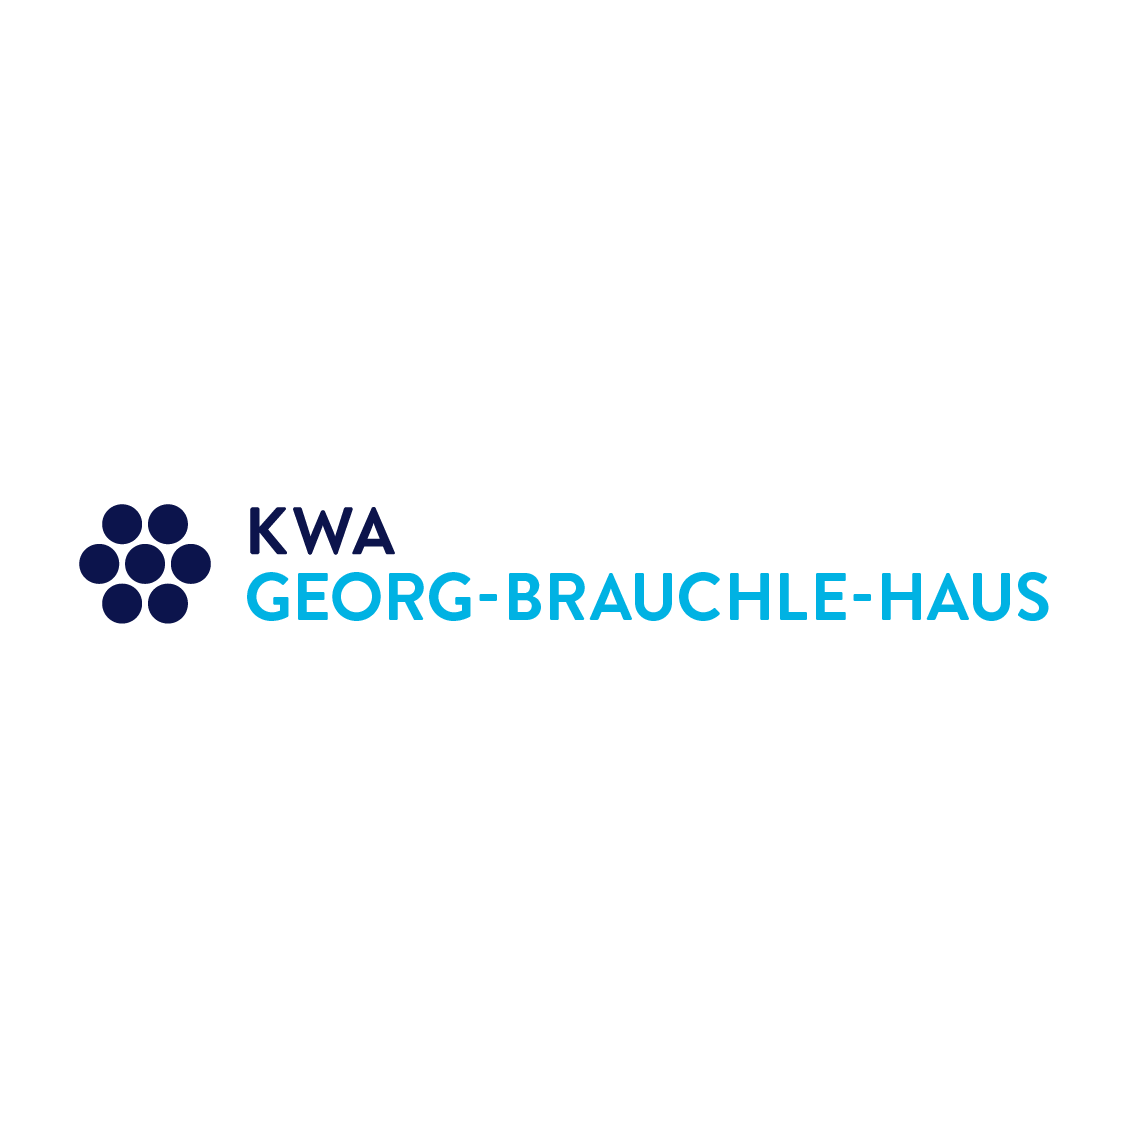 KWA Georg-Brauchle-Haus in München - Logo